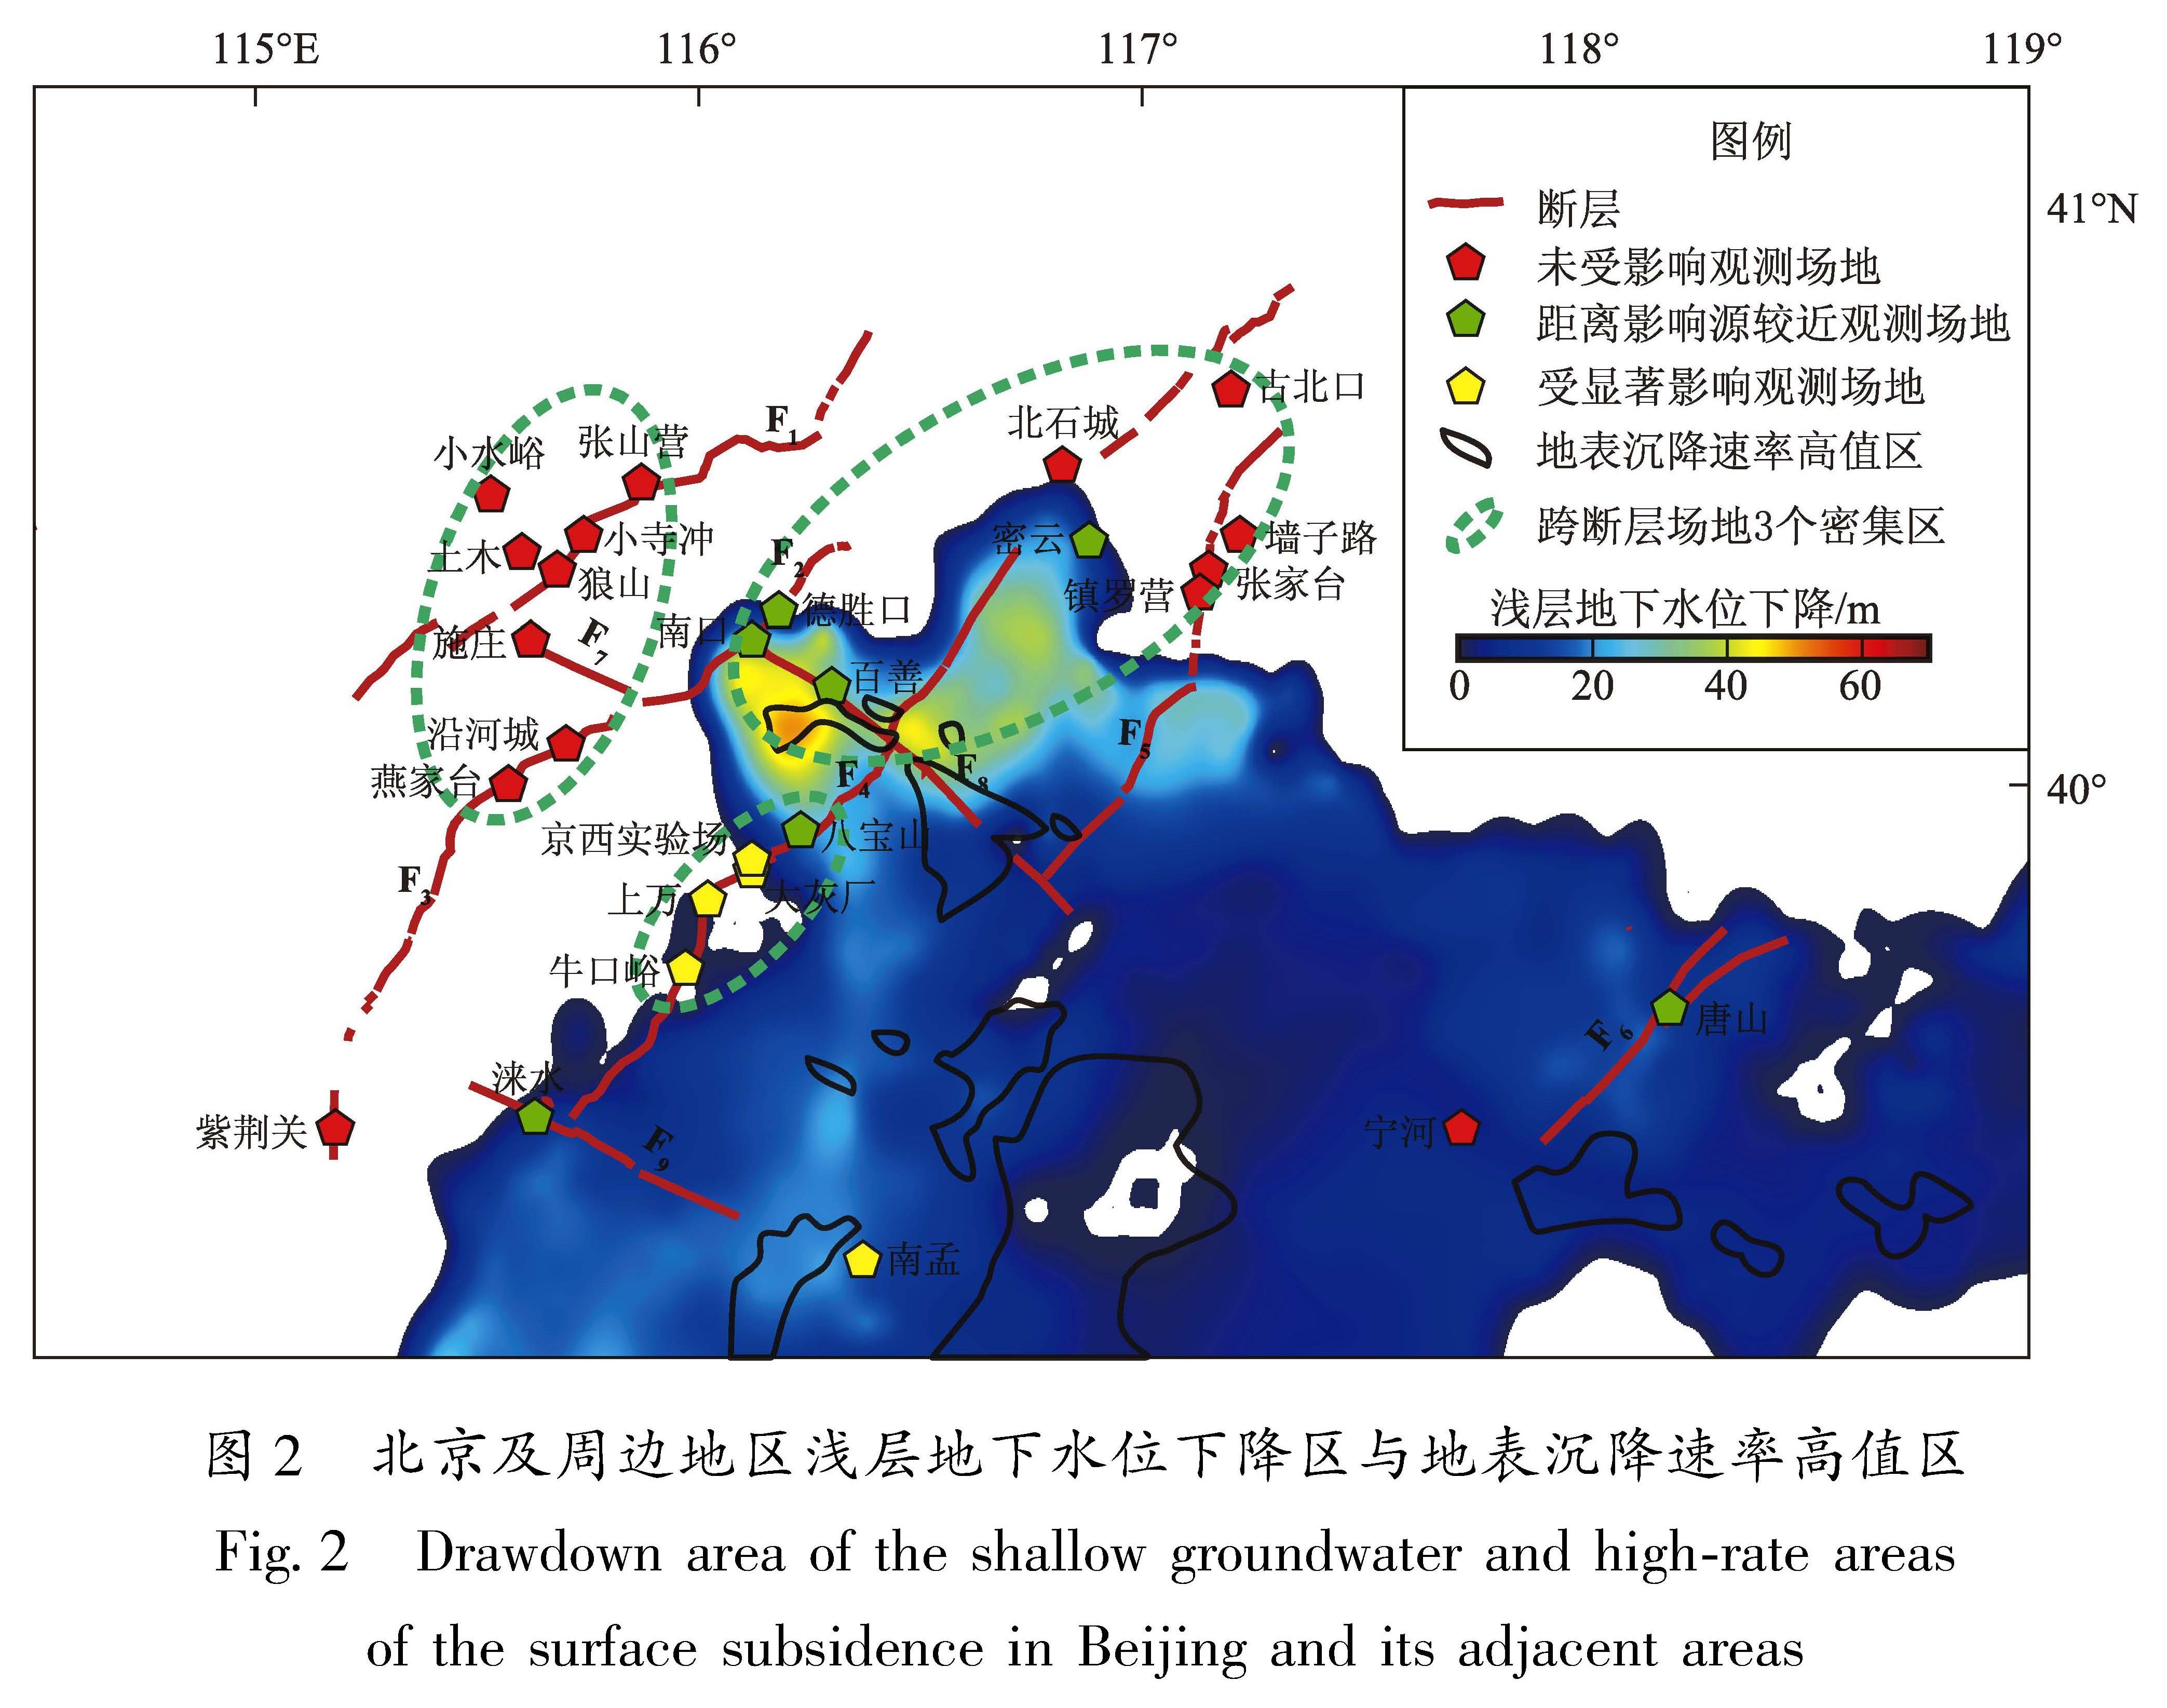 图2 北京及周边地区浅层地下水位下降区与地表沉降速率高值区<br/>Fig.2 Drawdown area of the shallow groundwater and high-rate areas of the surface subsidence in Beijing and its adjacent areas